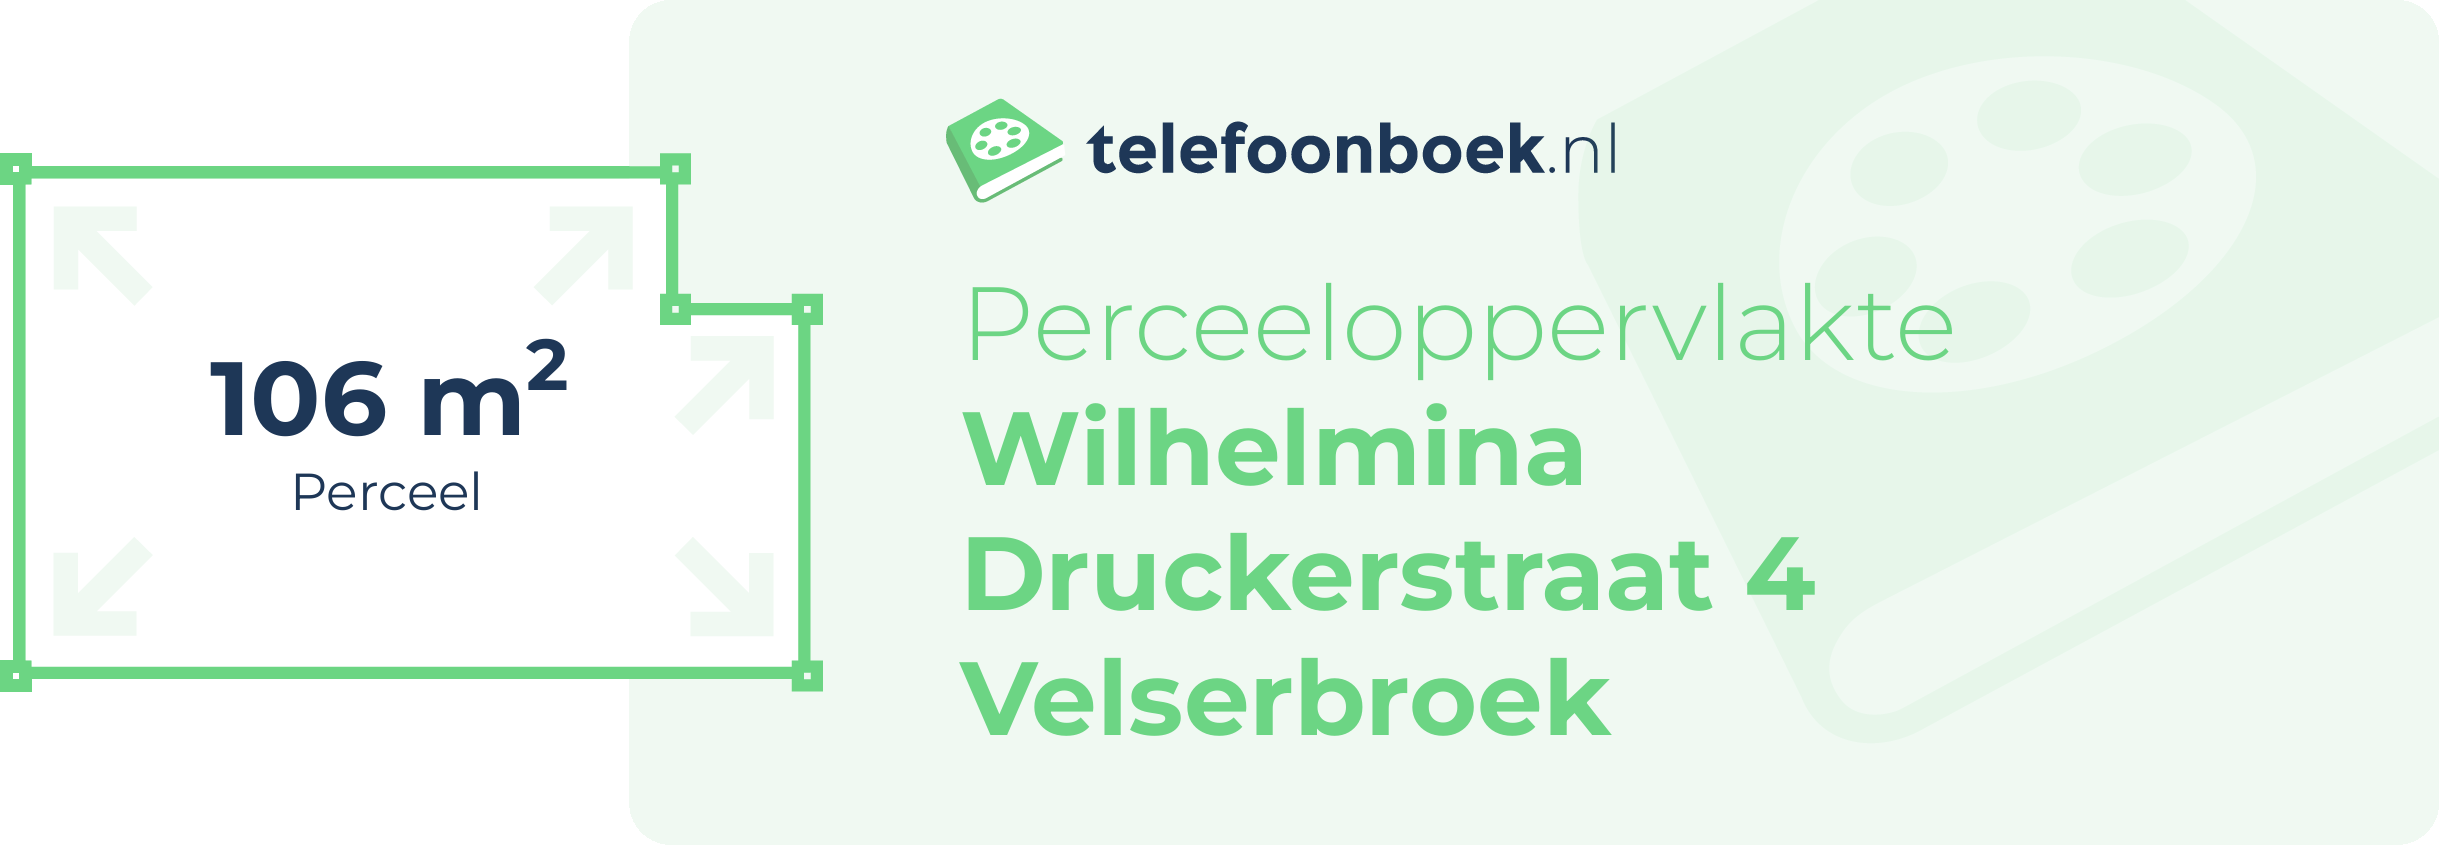 Perceeloppervlakte Wilhelmina Druckerstraat 4 Velserbroek